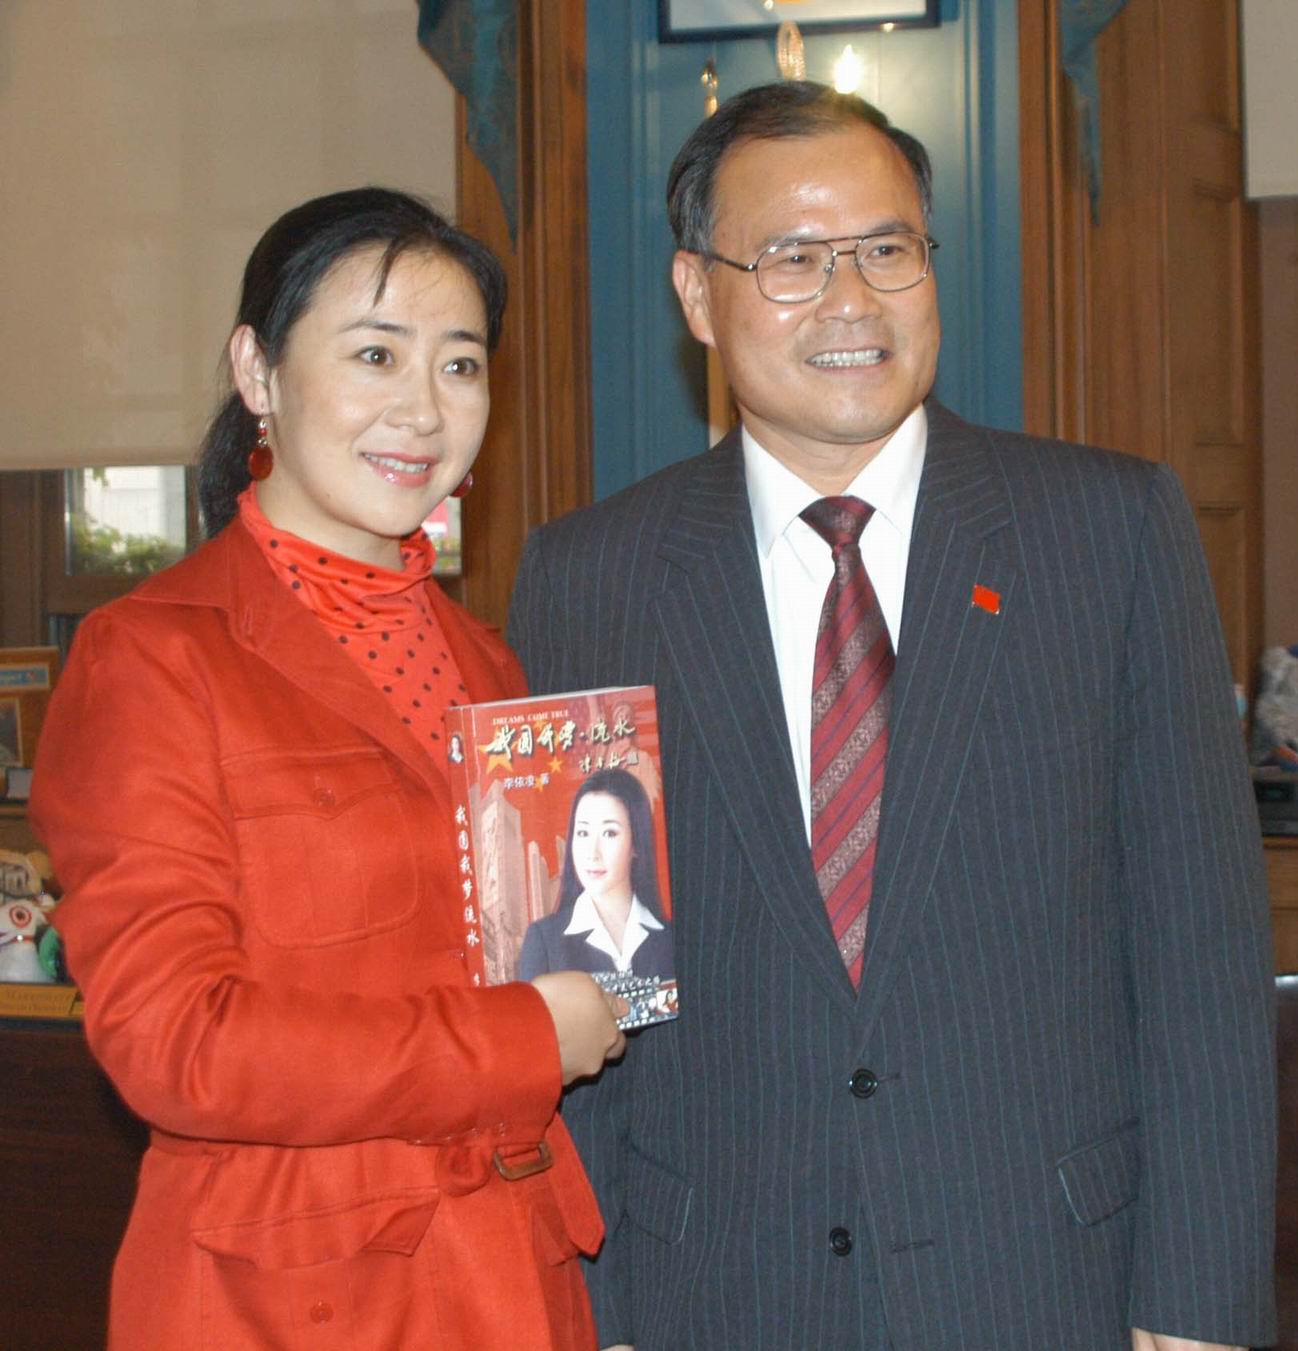 名称：中国驻纽约总领事刘碧伟祝贺李依凌新书出版
级别：普通图片